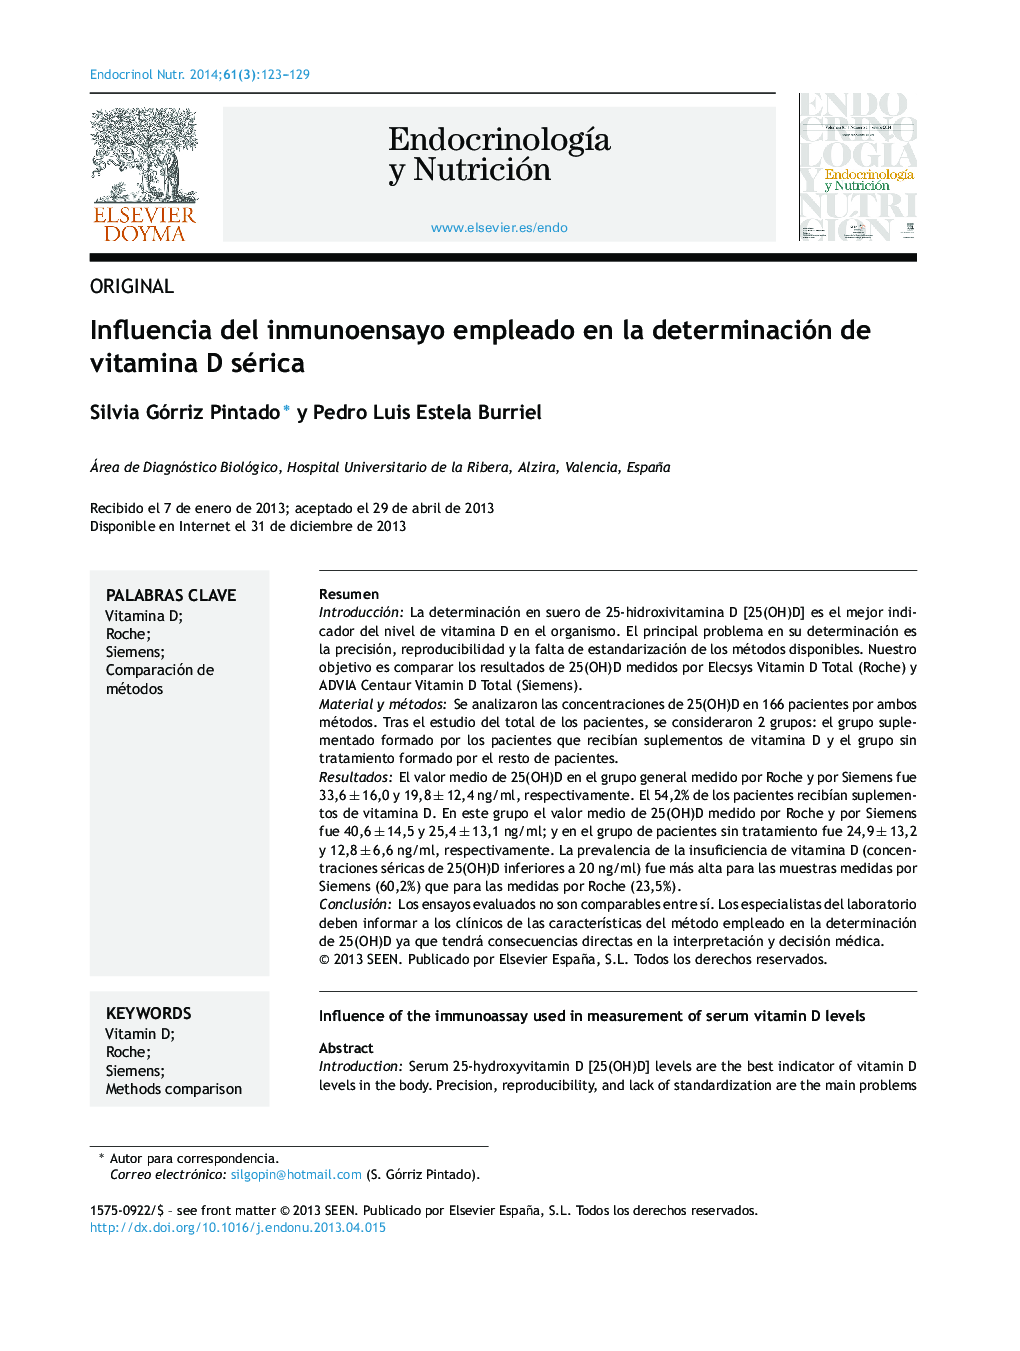 Influencia del inmunoensayo empleado en la determinación de vitamina D sérica